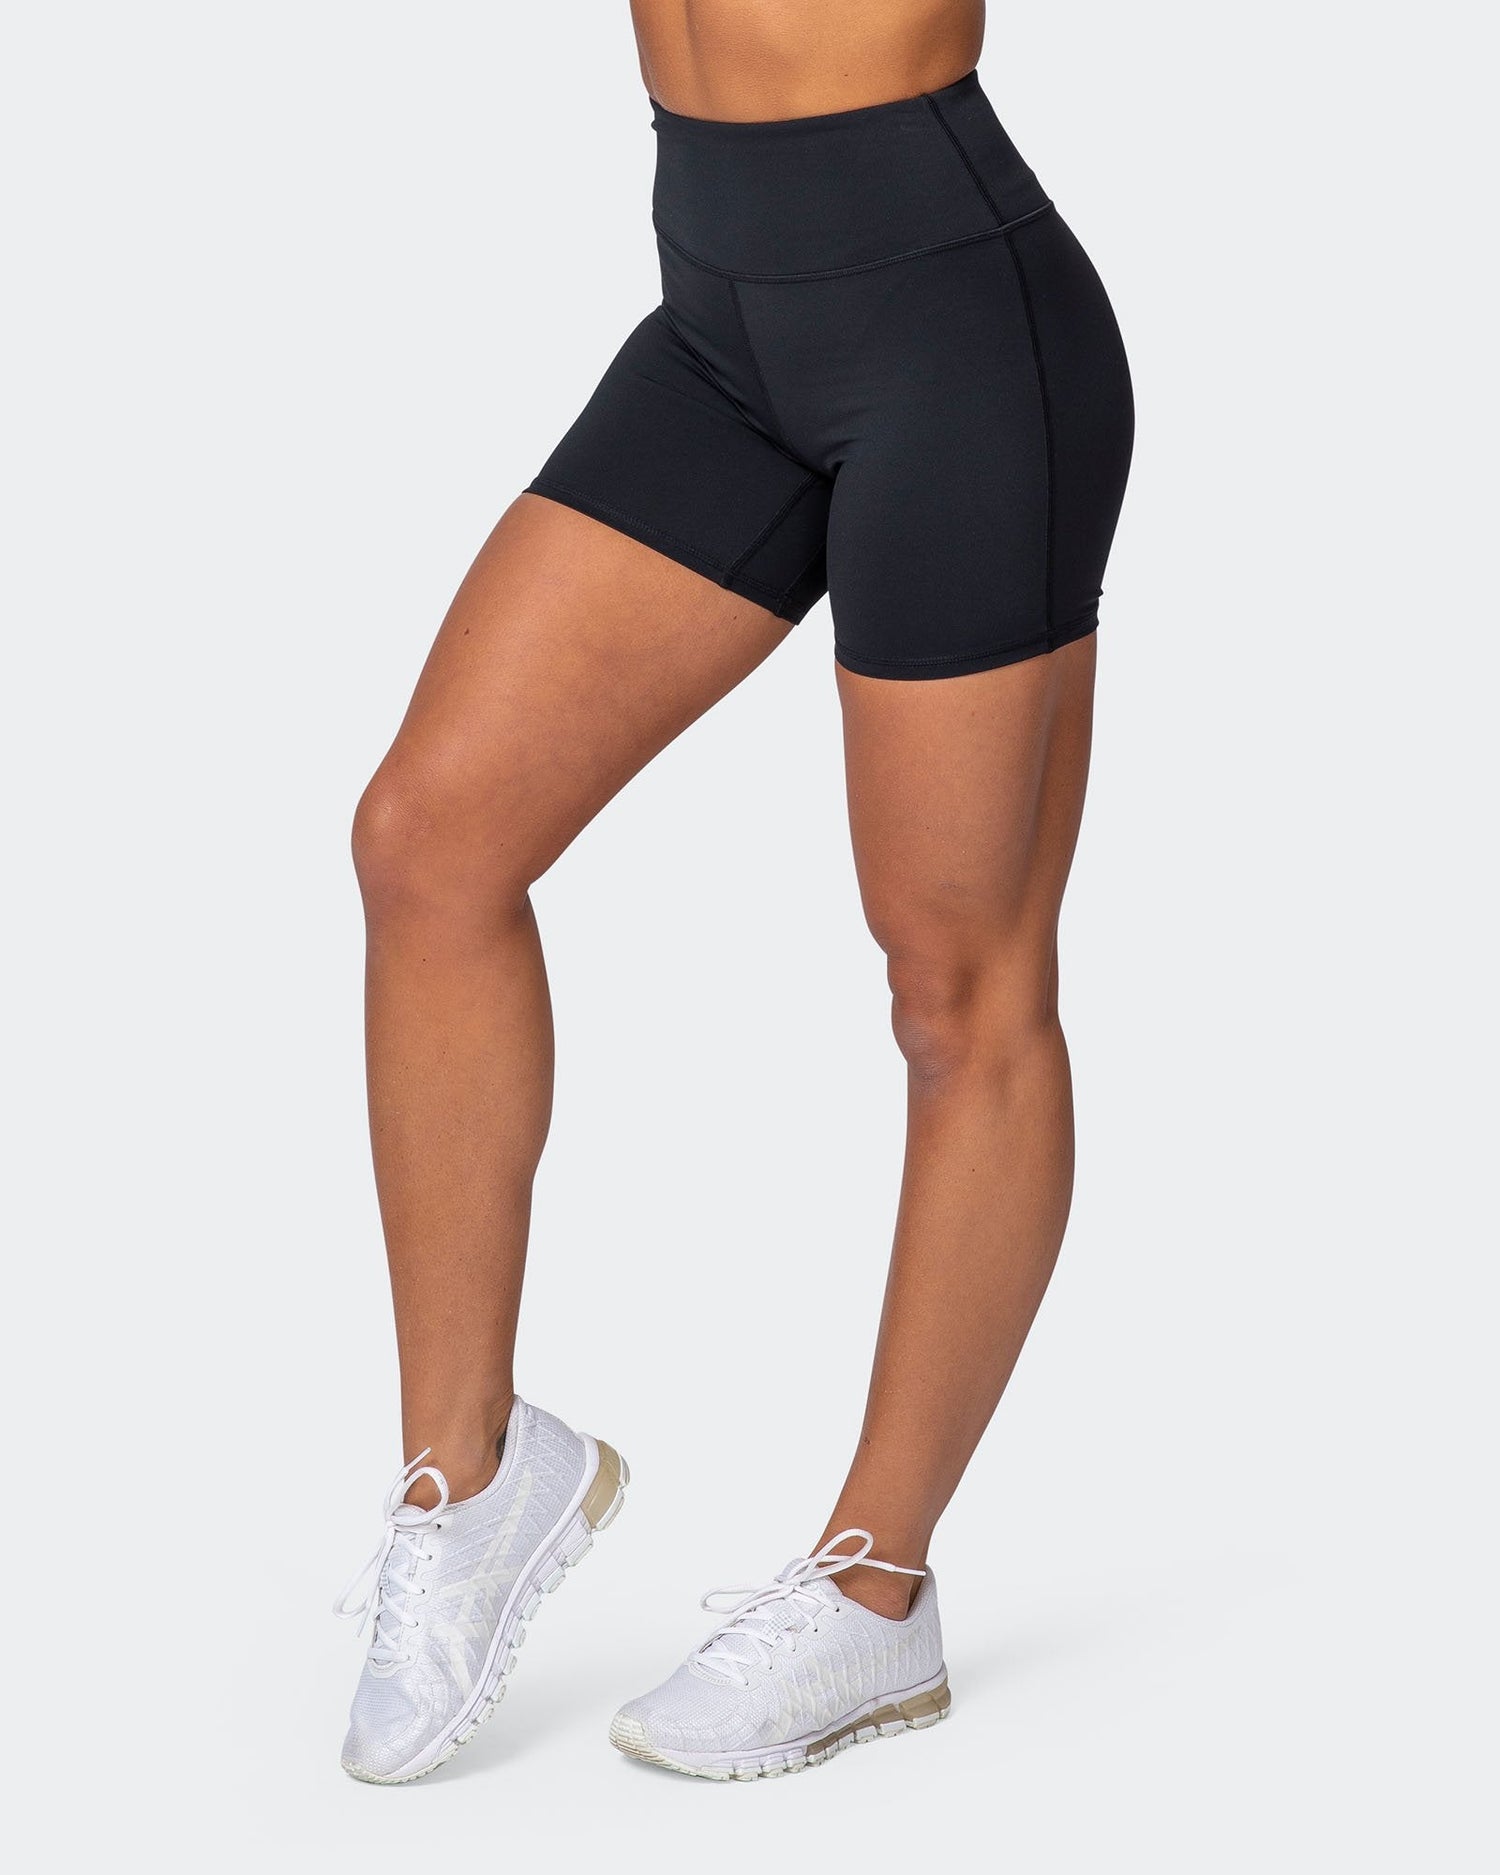 Superior Squat Bike Shorts - Black